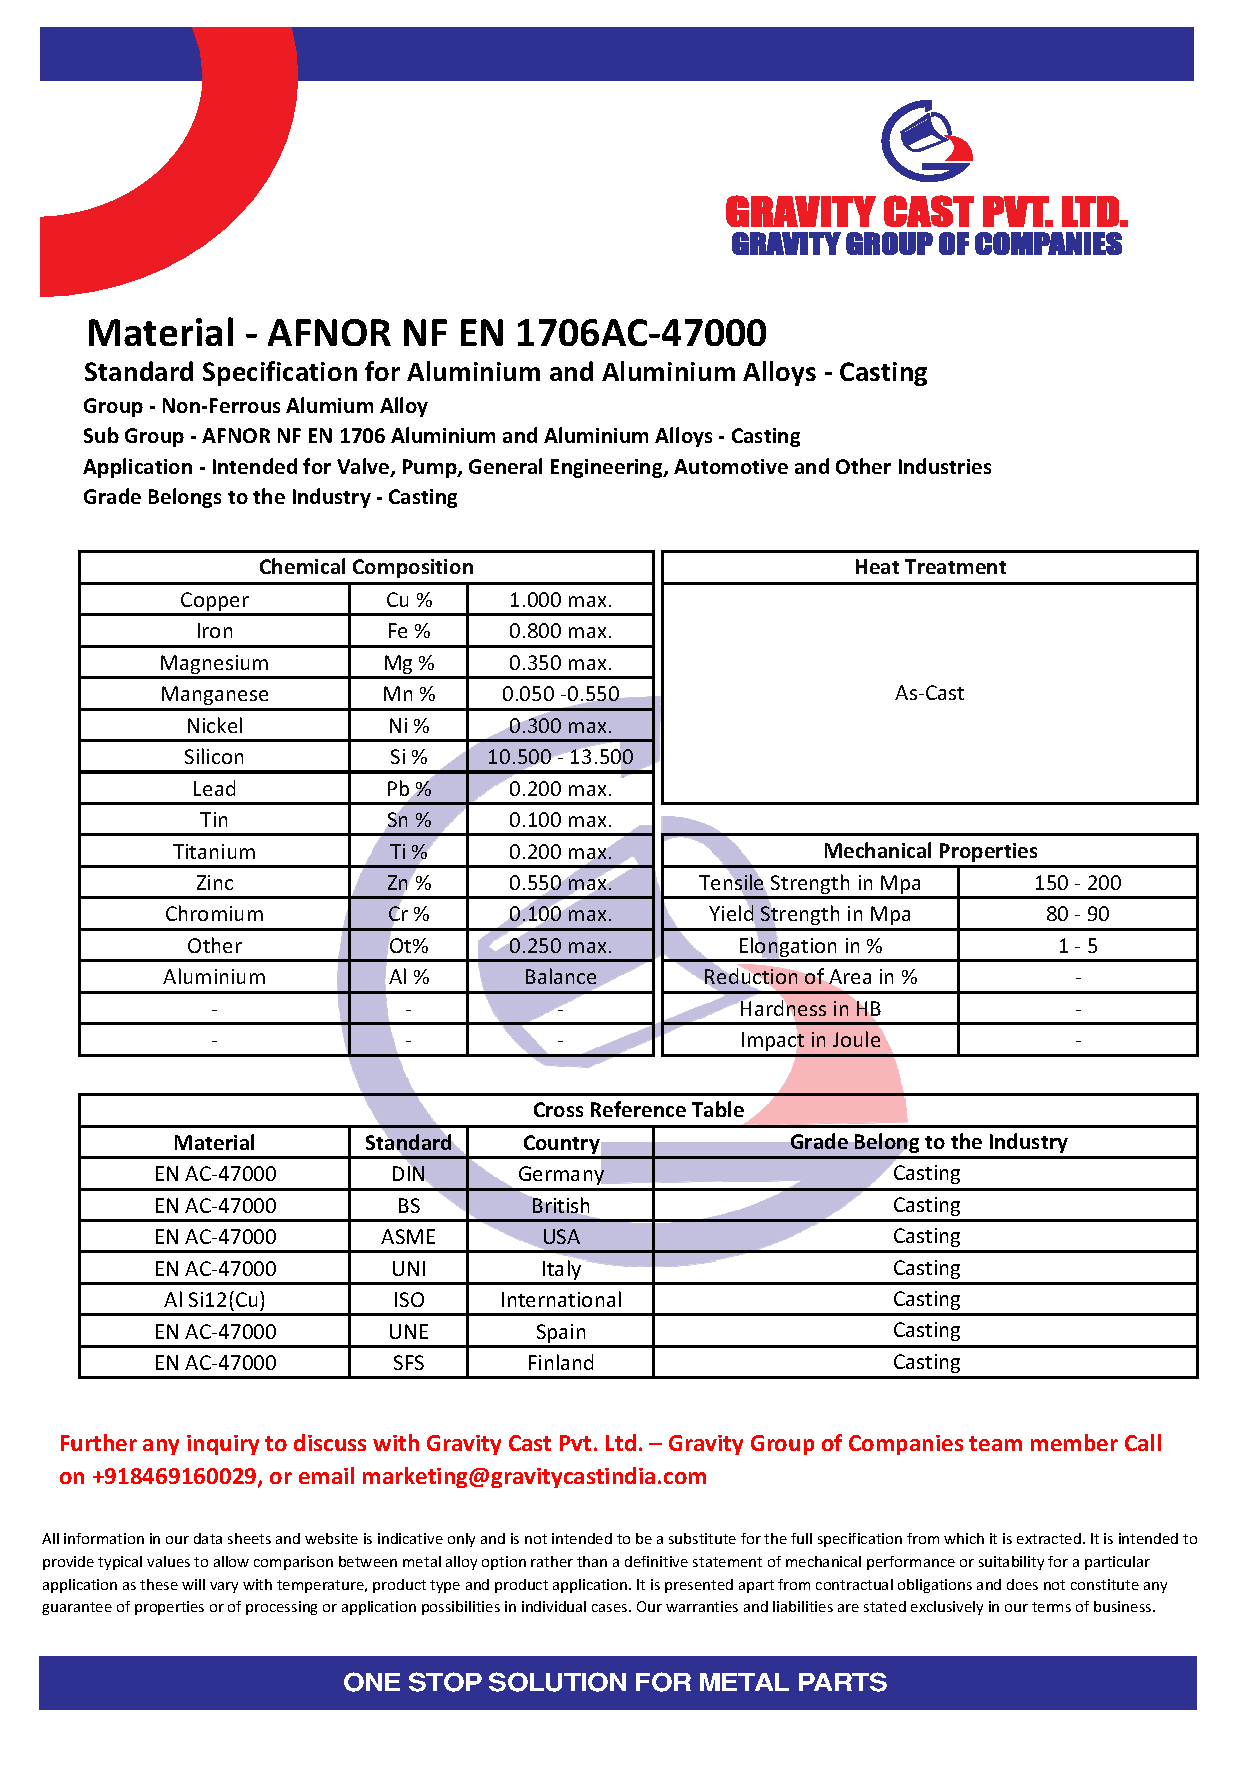 AFNOR NF EN 1706AC-47000.pdf